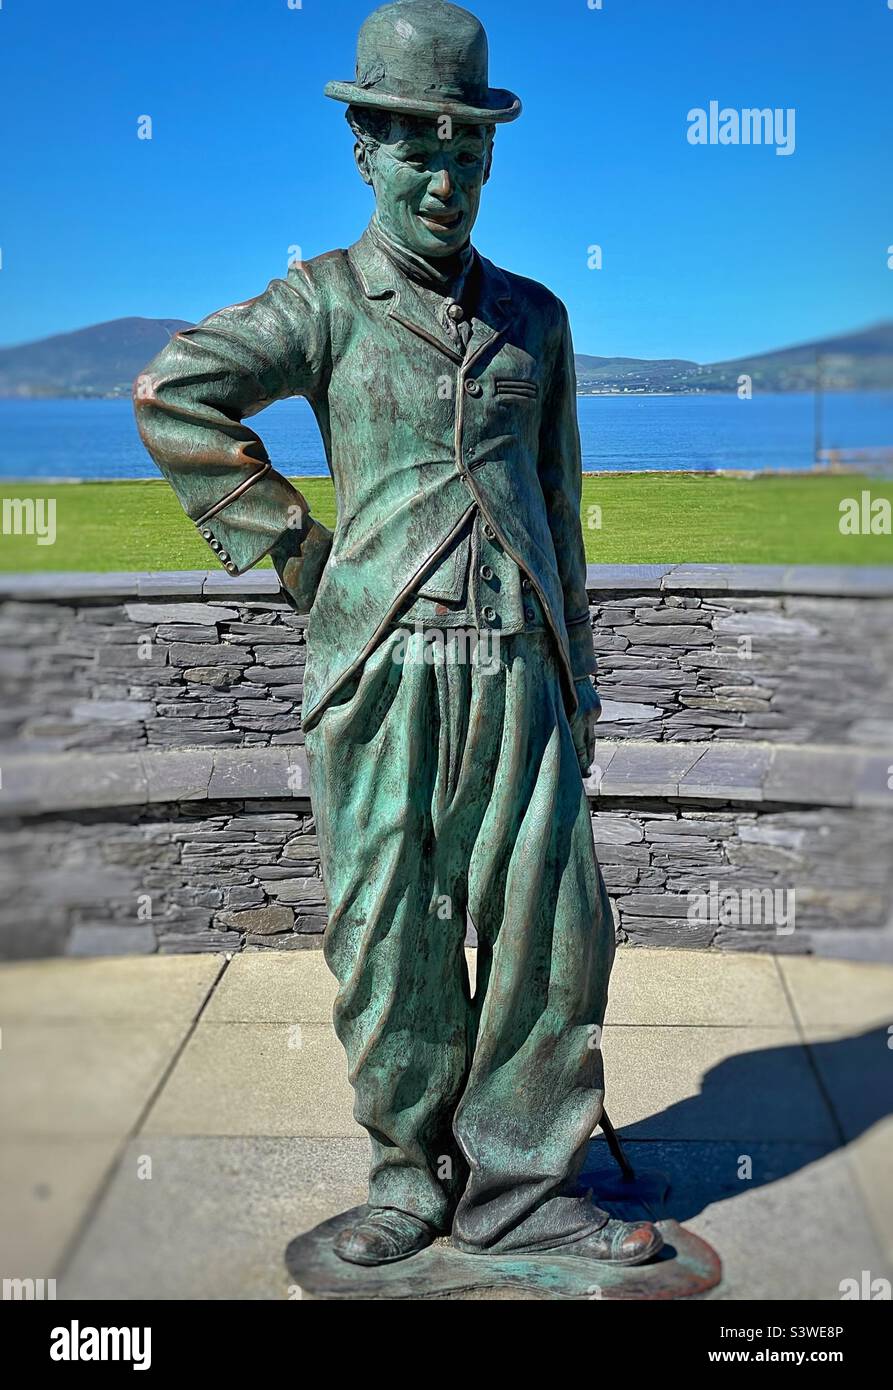 Sculpture en bronze de Charlie Chaplin à Waterville, comté de Kerry, Irlande, par Alan Ryan Hall. Banque D'Images